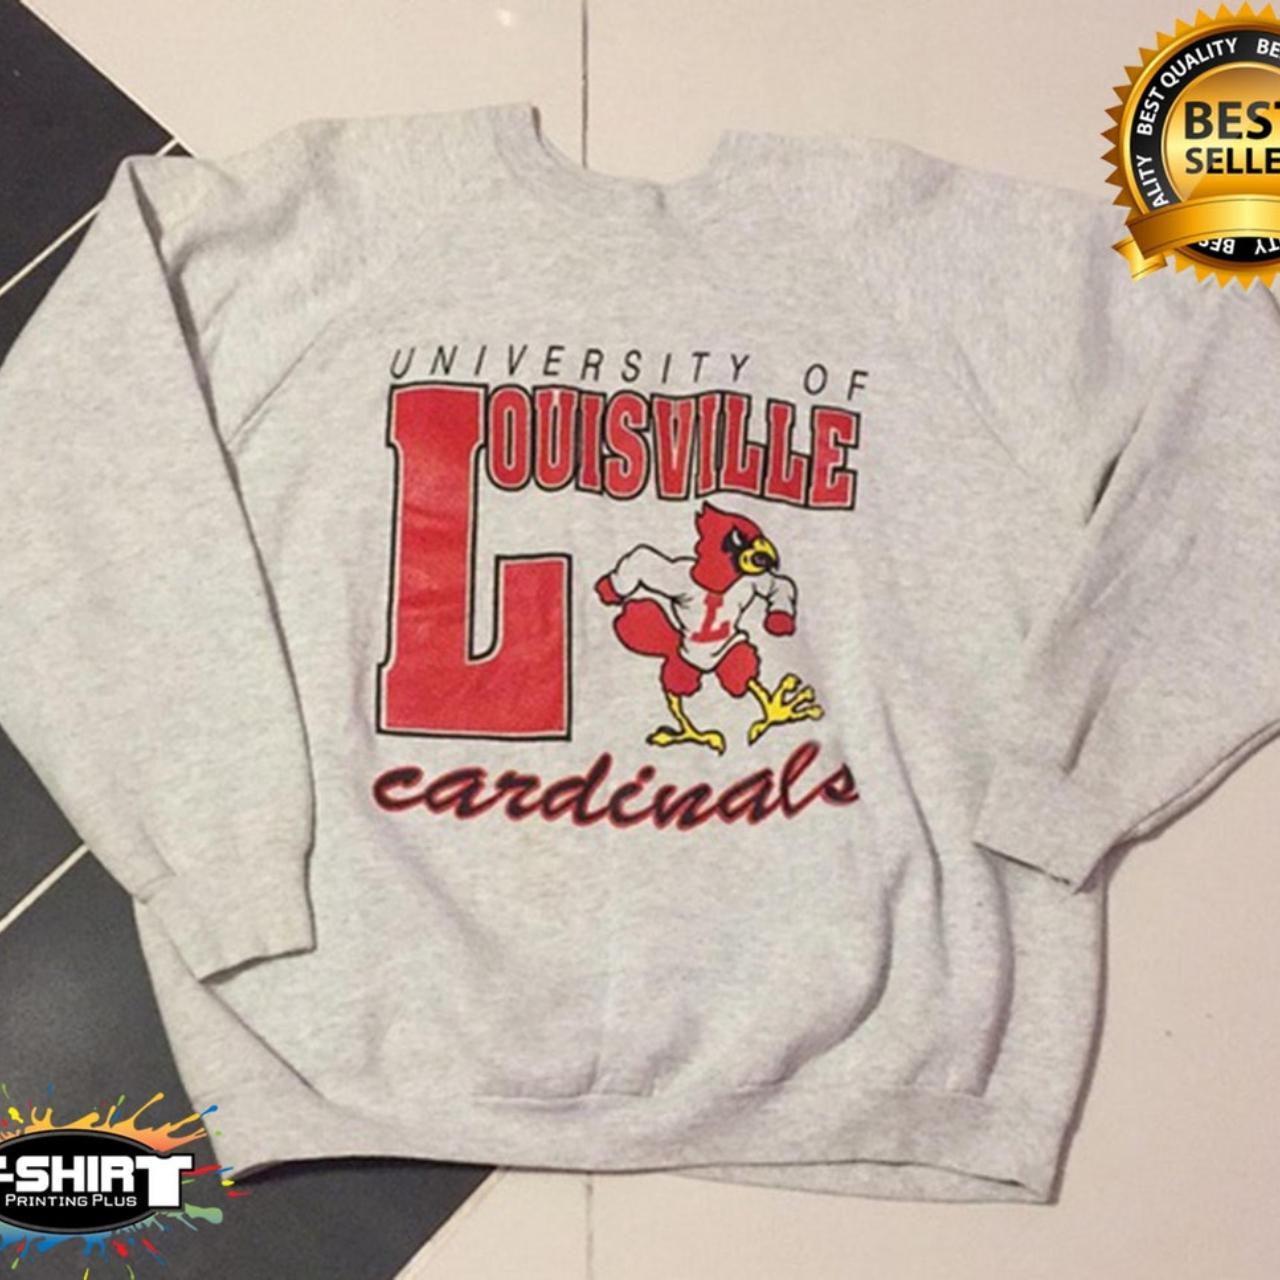 Vintage Louisville Cardinals College Sweatshirt, Size Medium